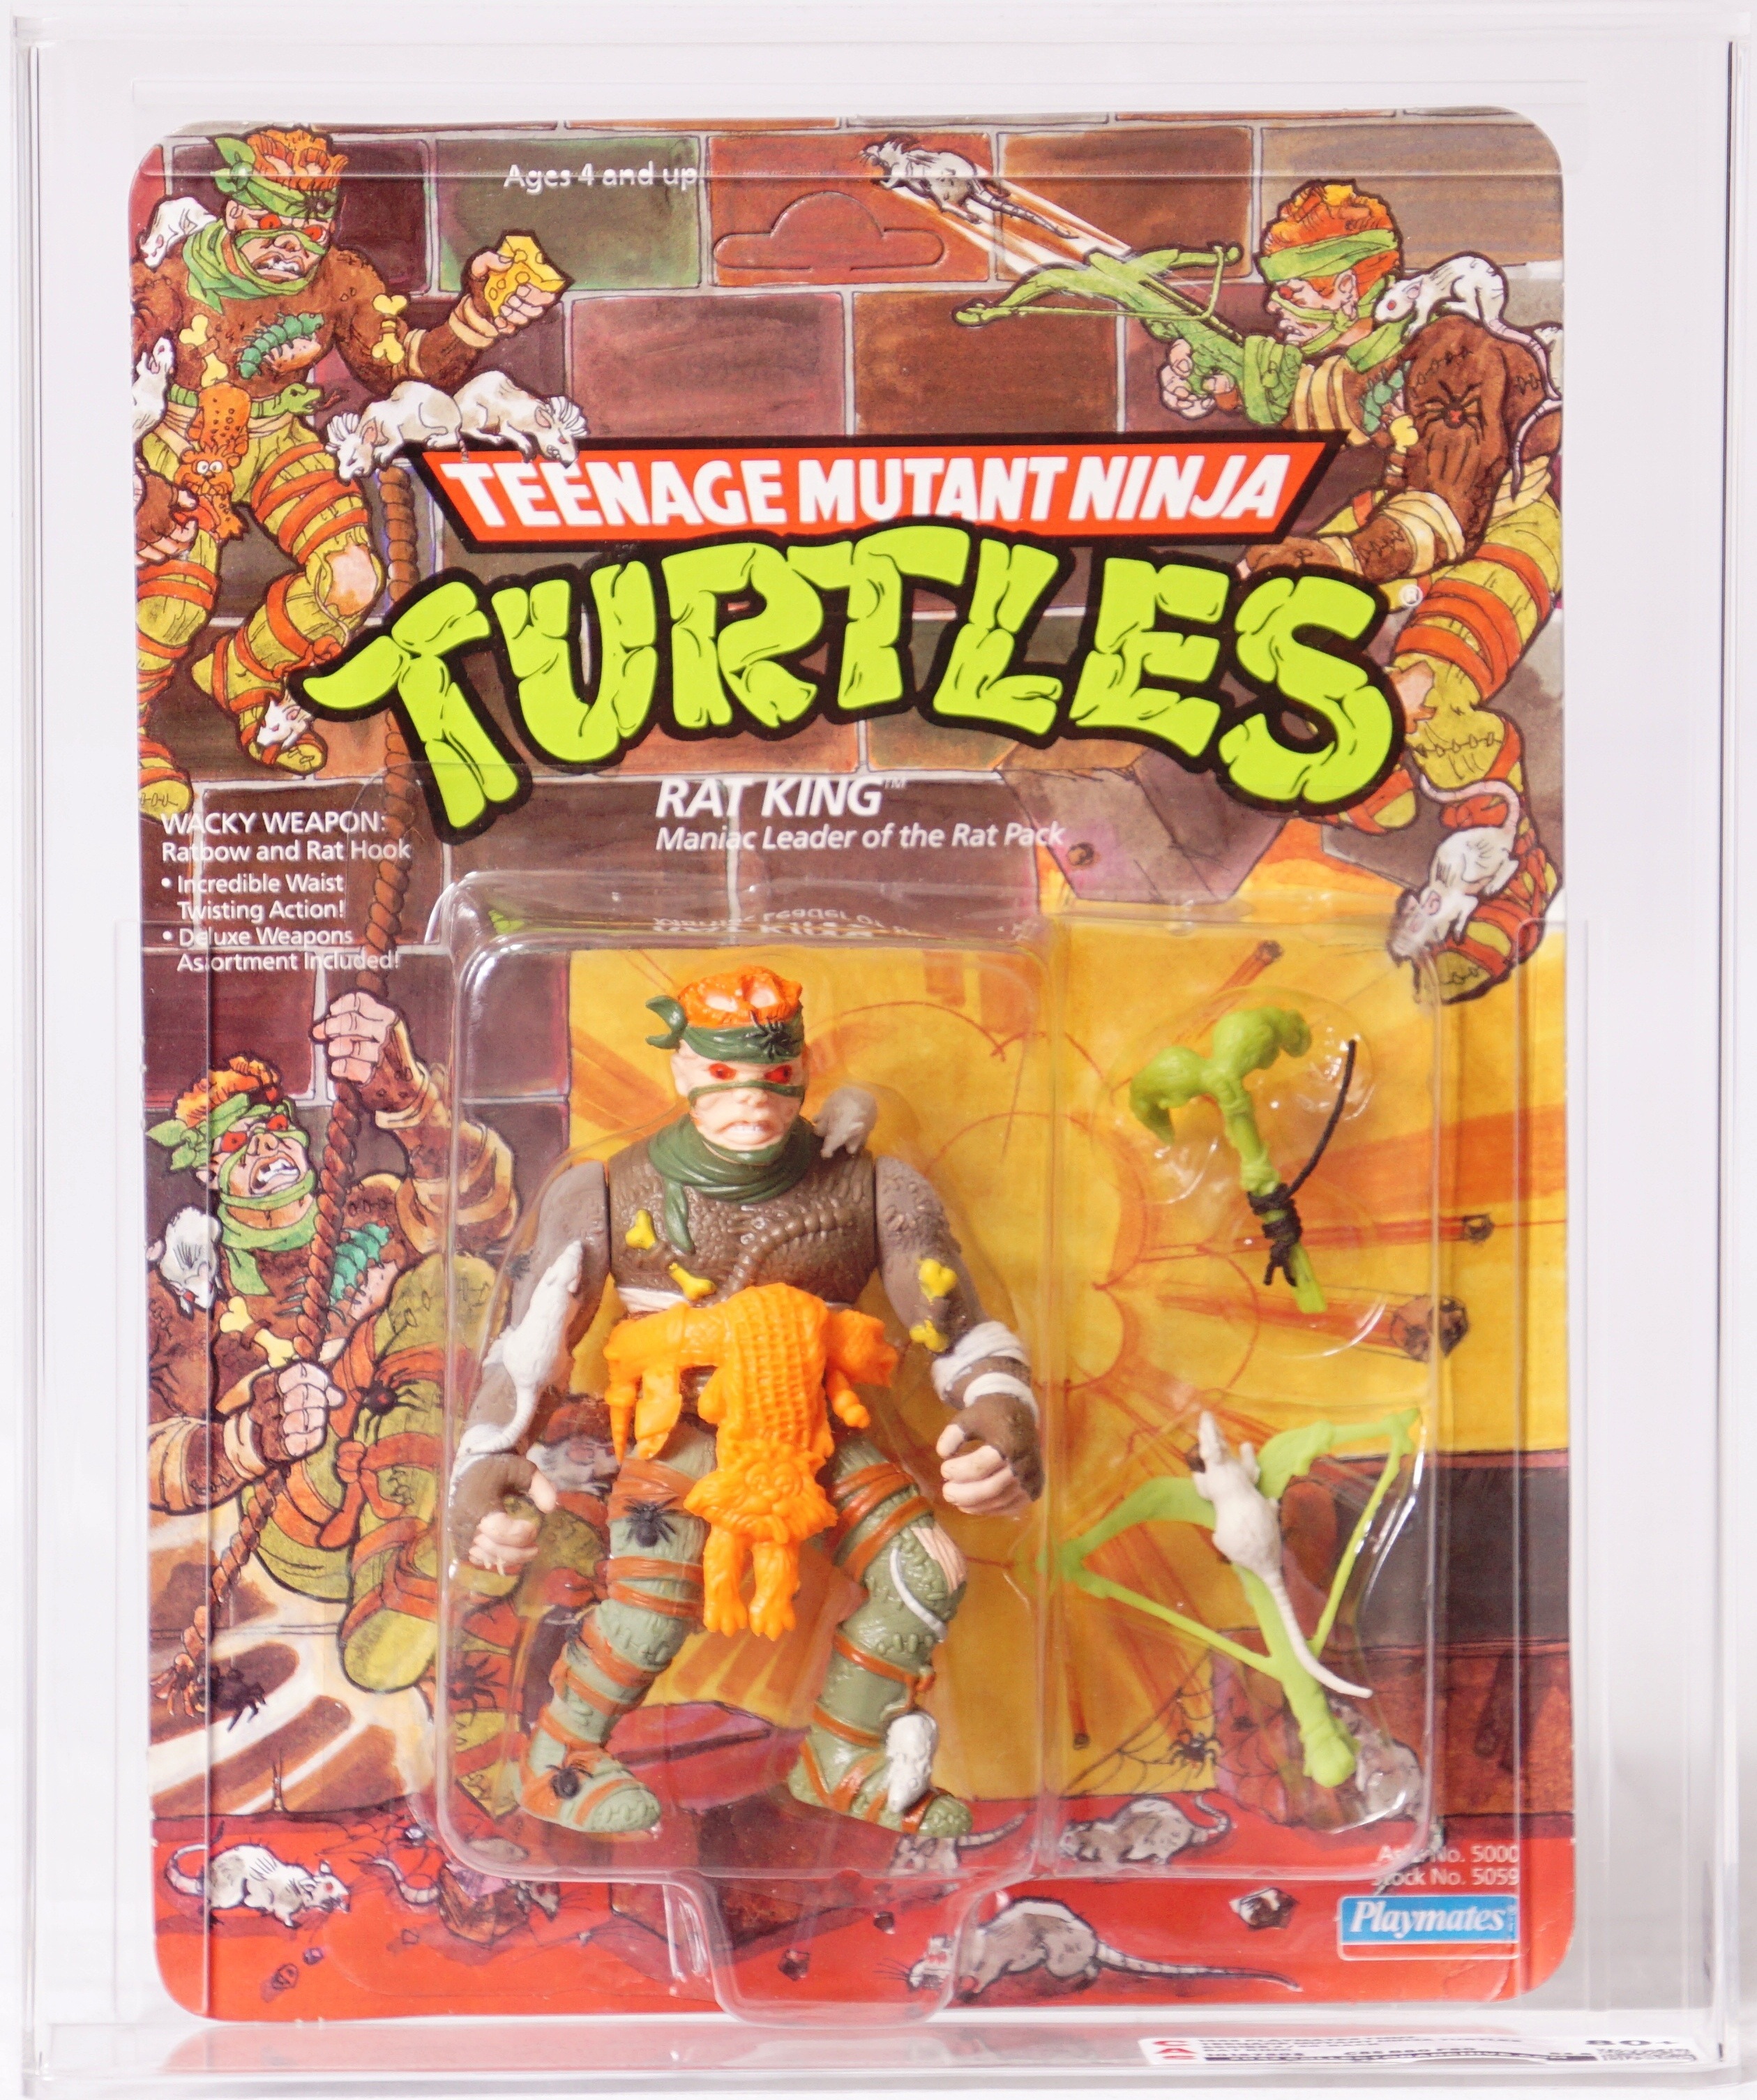 Rat King TMNT Teenage Mutant Ninja Turtles Figure New 2013 Nickelodeon  Playmates